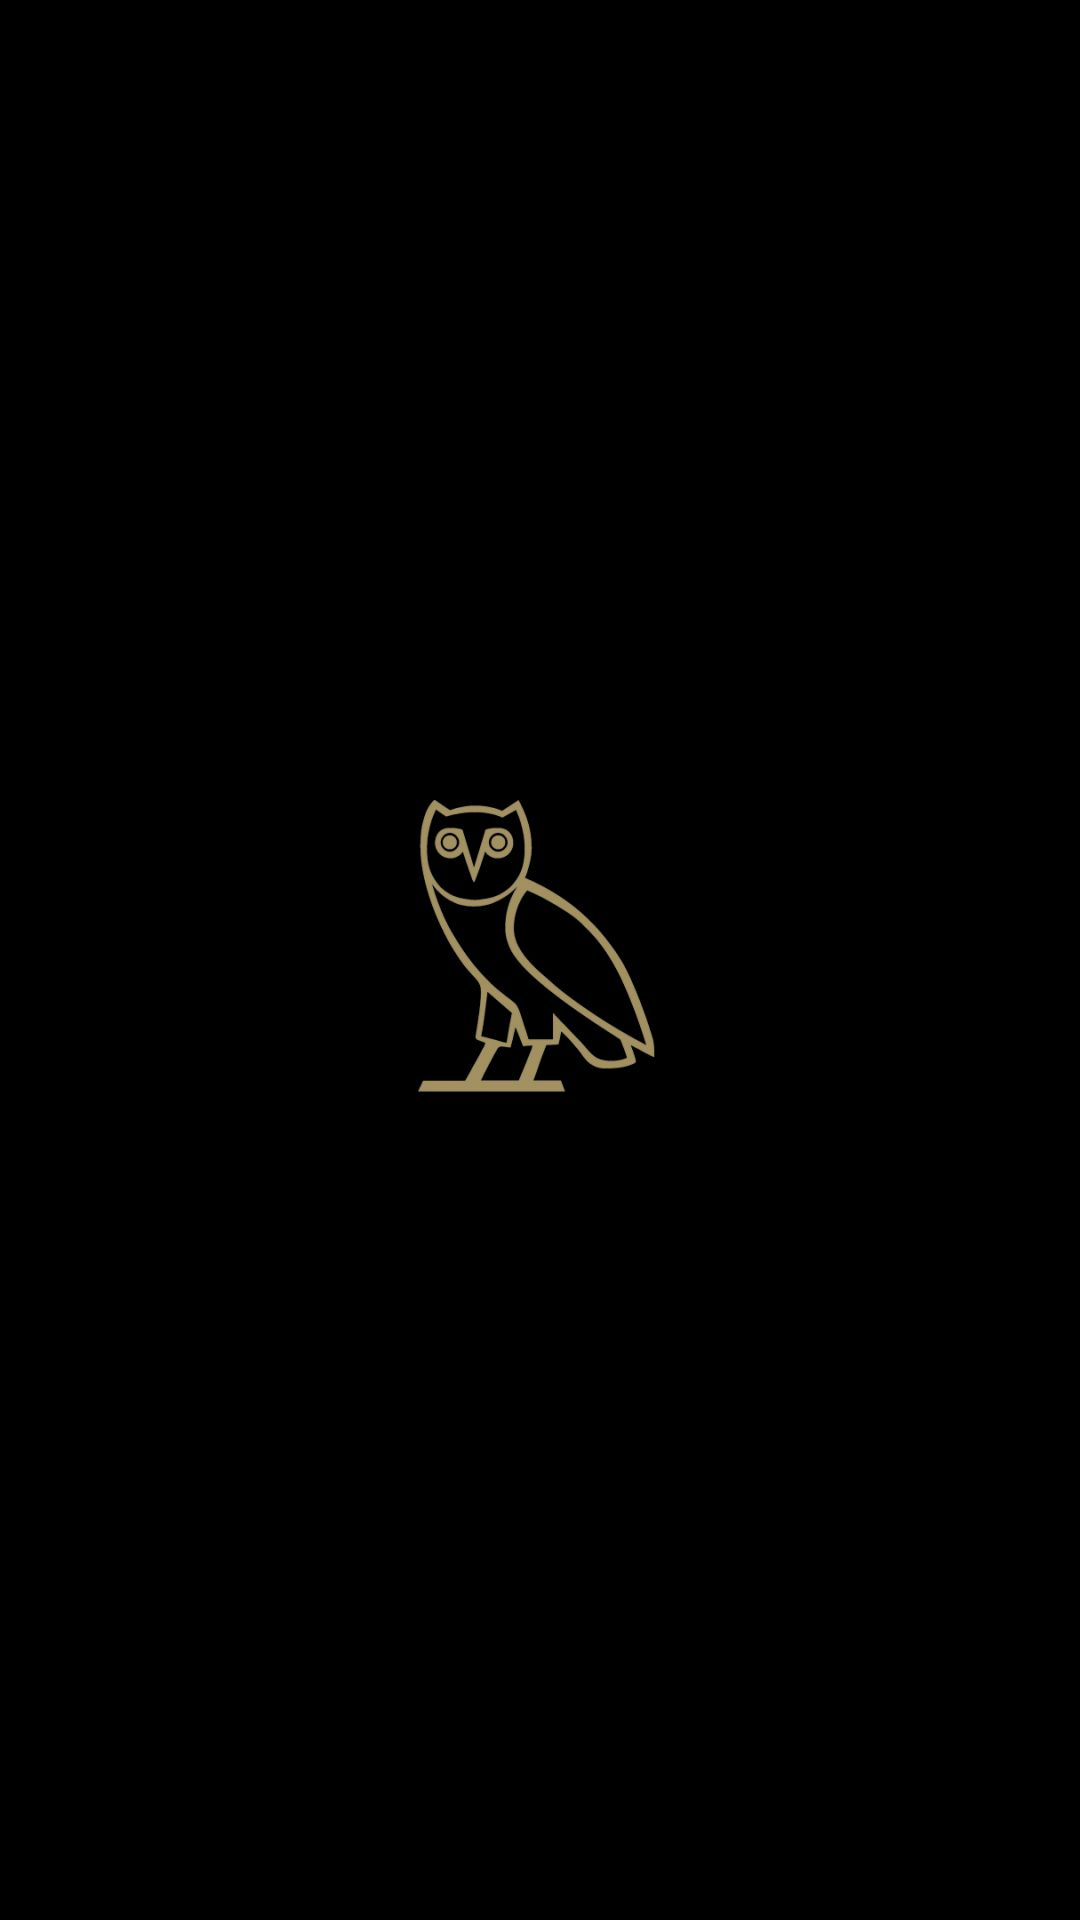 1080x1920 Drake Owl Wallpapers